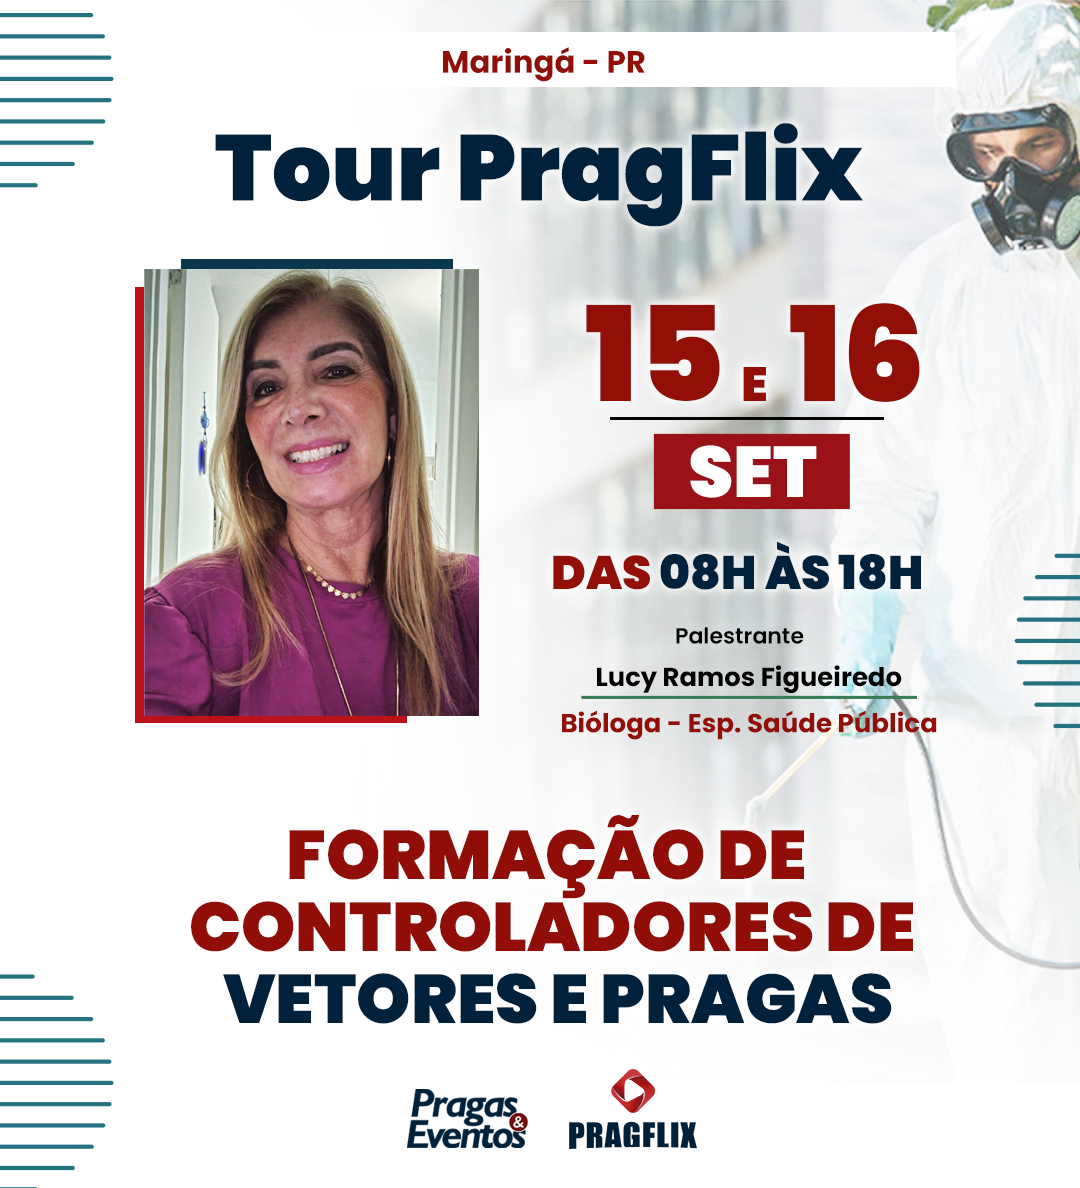 Tour Pragflix - Maringá